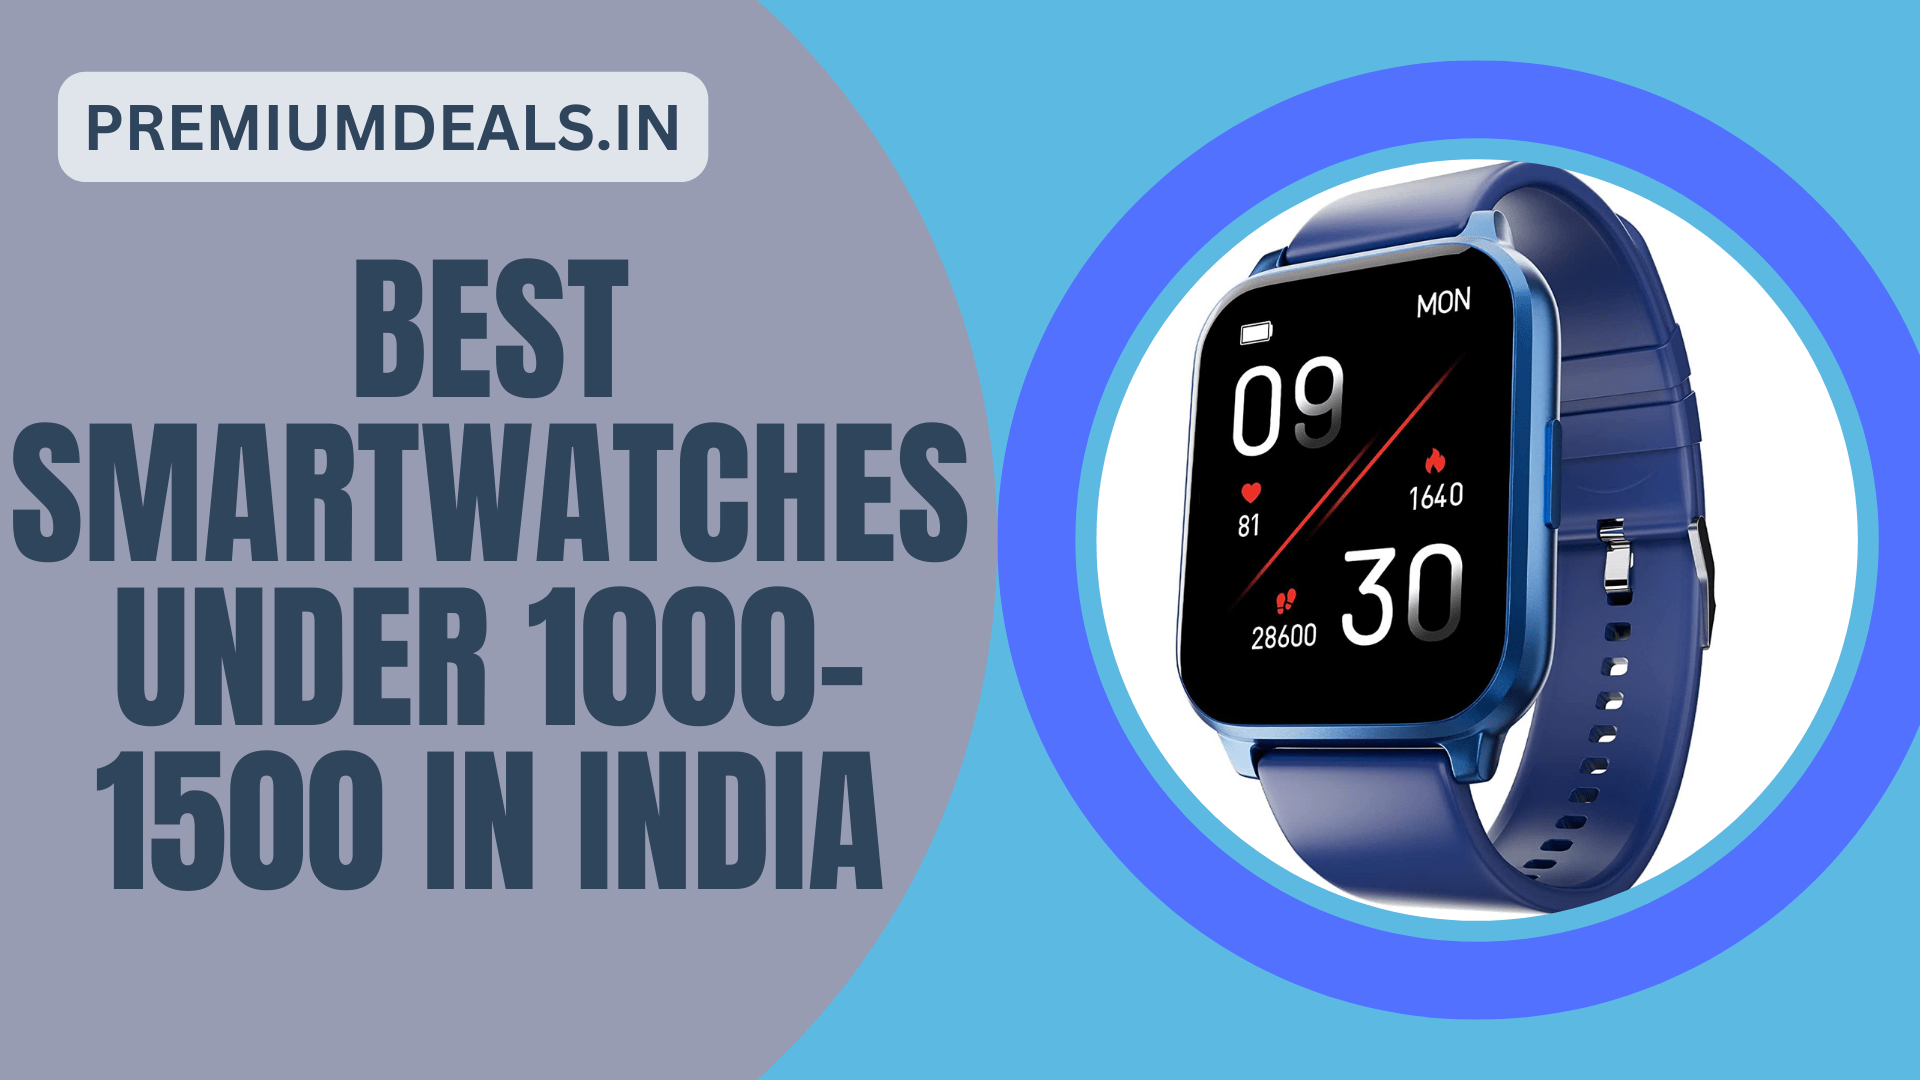 Best Smartwatches Under 1000-1500 in India